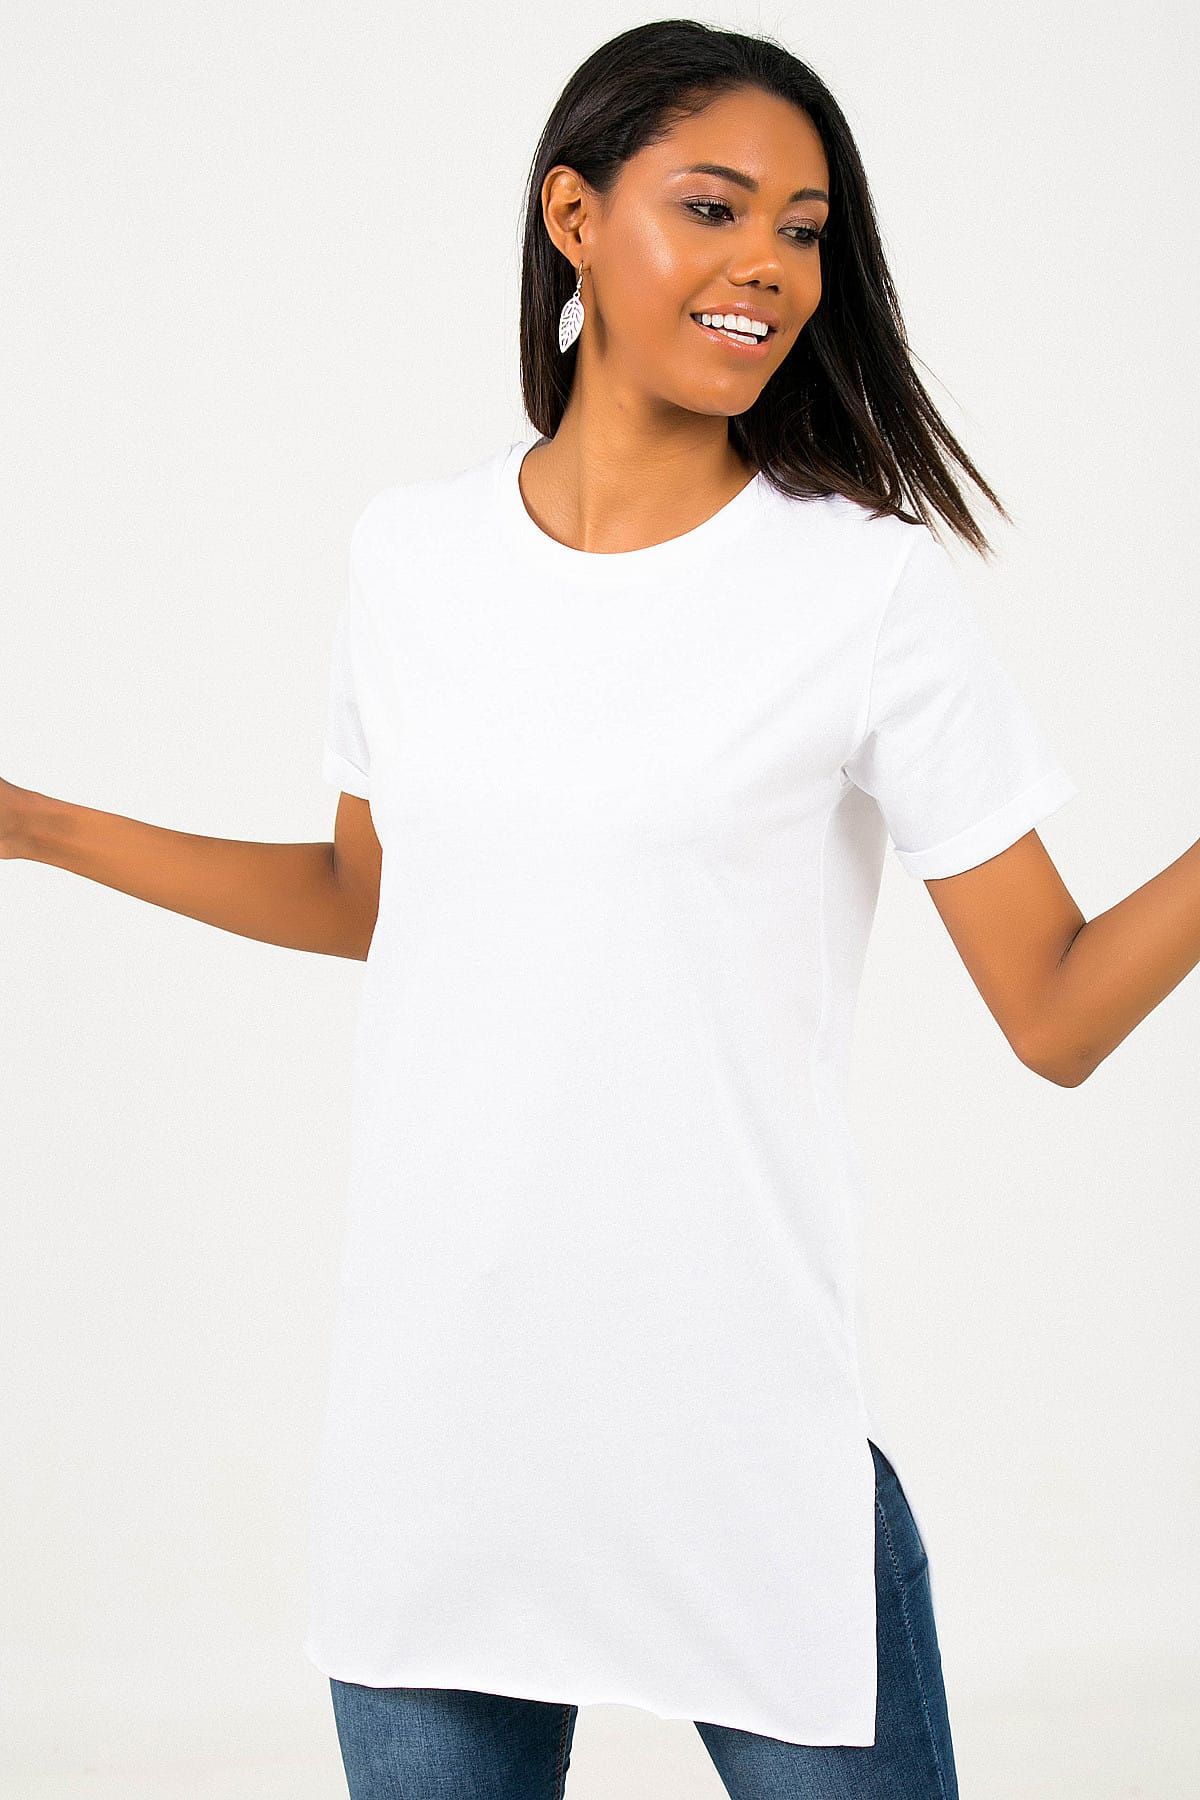 By Saygı Kadın Beyaz Bisiklet Yaka Yanları Yırtmaçlı Likra Tunik T-Shirt S-19K0080021